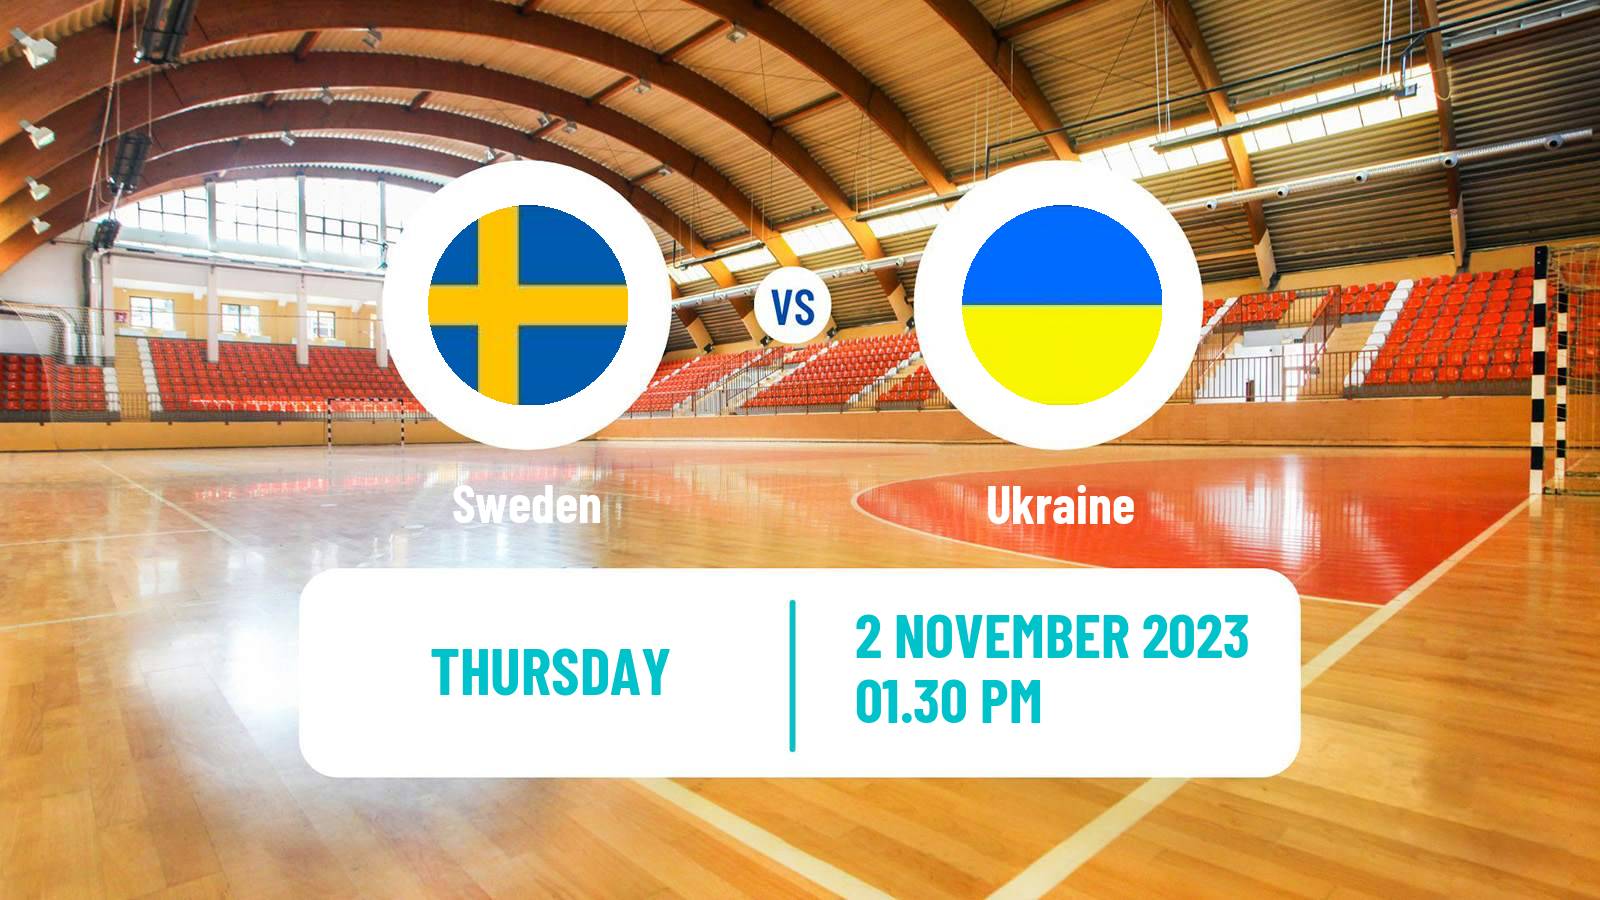 Handball Friendly International Handball Sweden - Ukraine